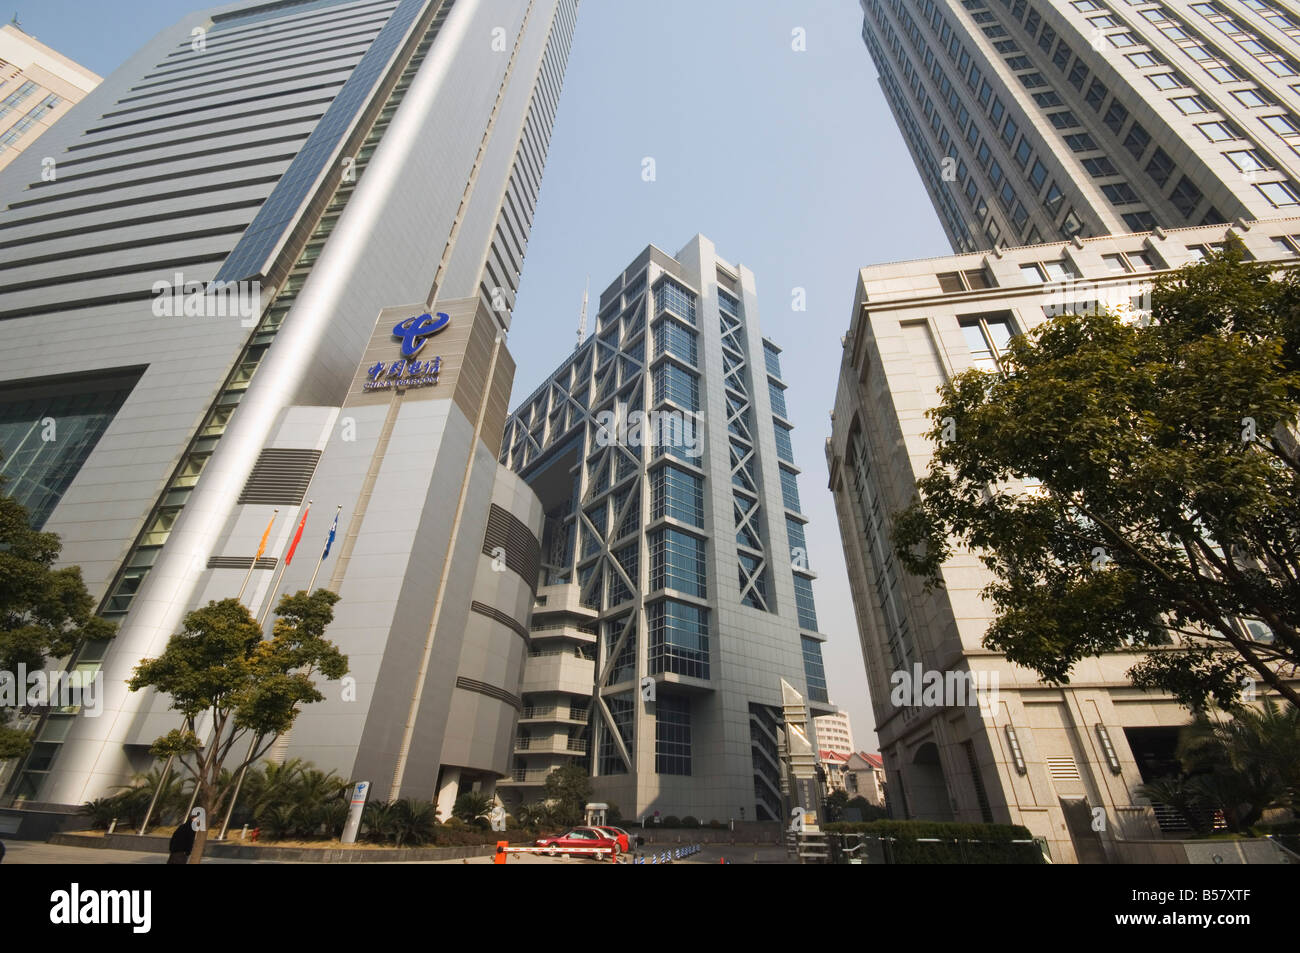 Borsa di shanghai immagini e fotografie stock ad alta risoluzione - Alamy